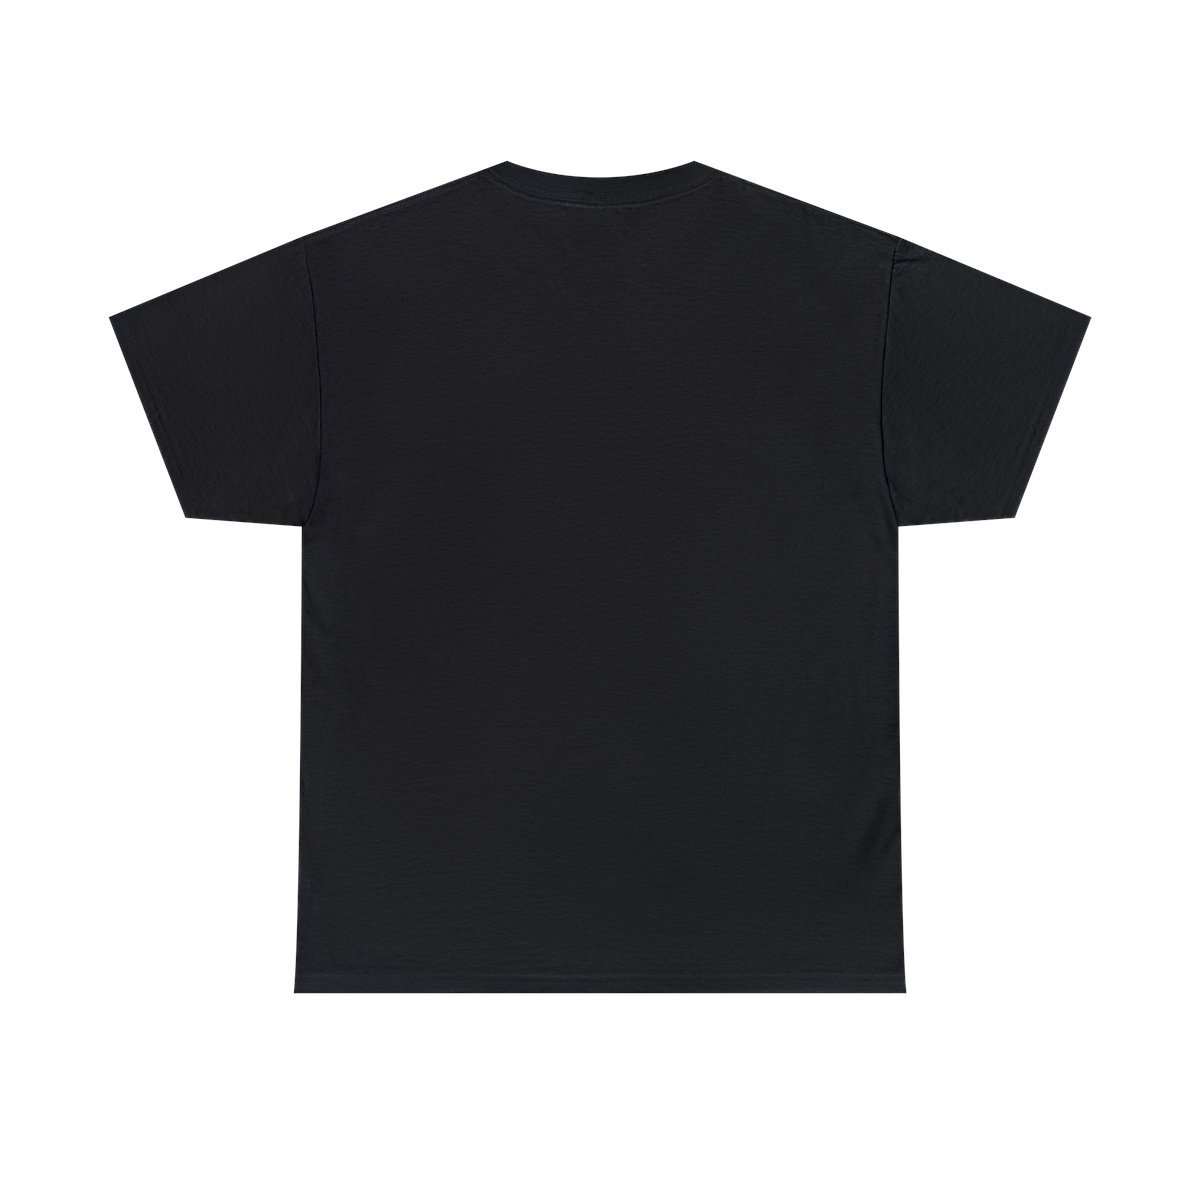 Aceldama – Embodiment Of Wretchedness Short Sleeve T-shirt